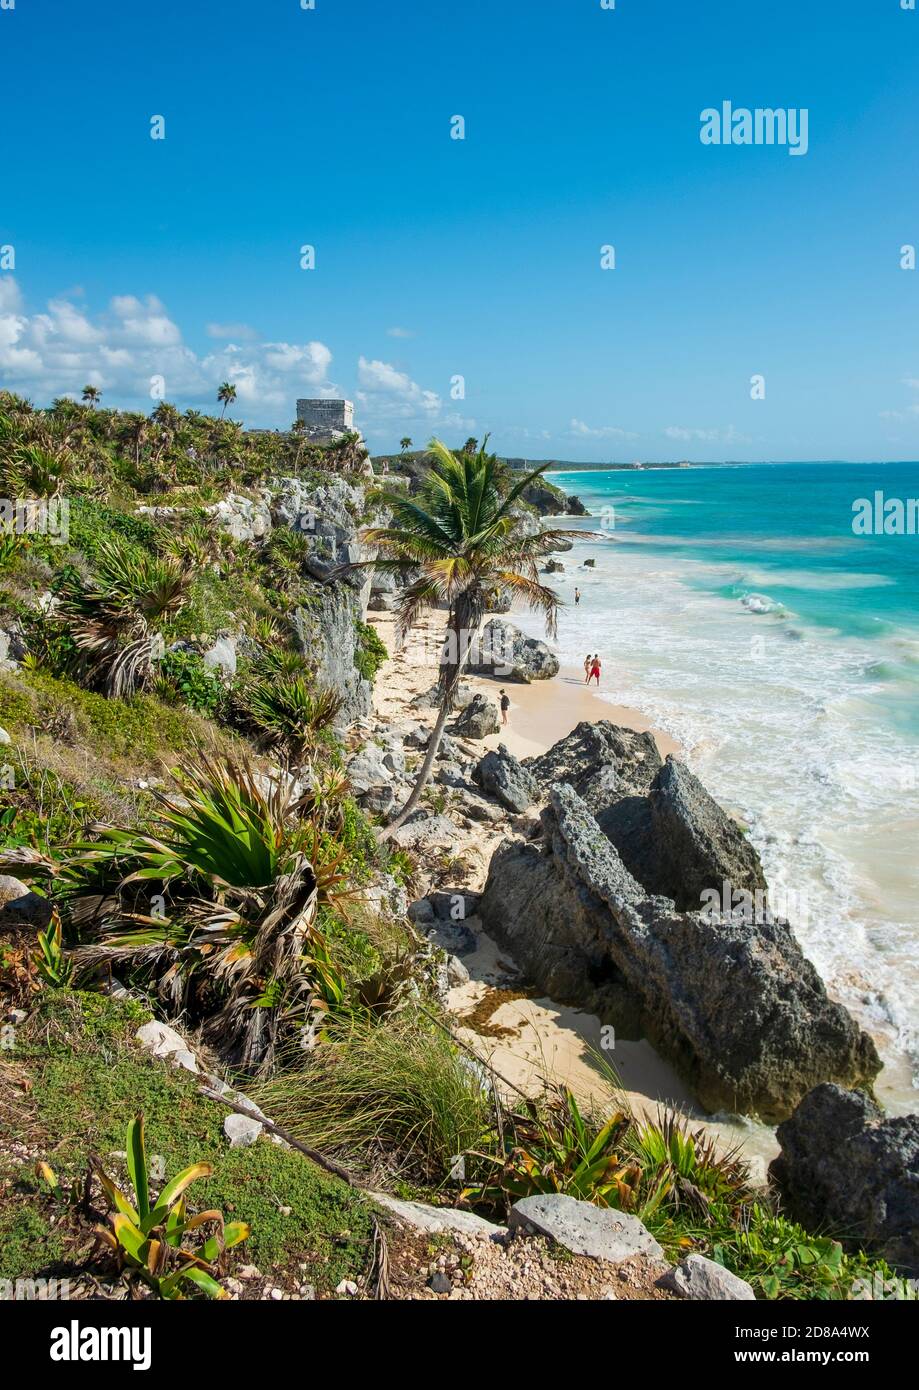 Tulum, Messico - 12 marzo 2020: Turisti su una spiaggia di mare dei Caraibi a Tulum, Yucatan, Messico. Sulla scogliera in lontananza è uno dei templi della Foto Stock